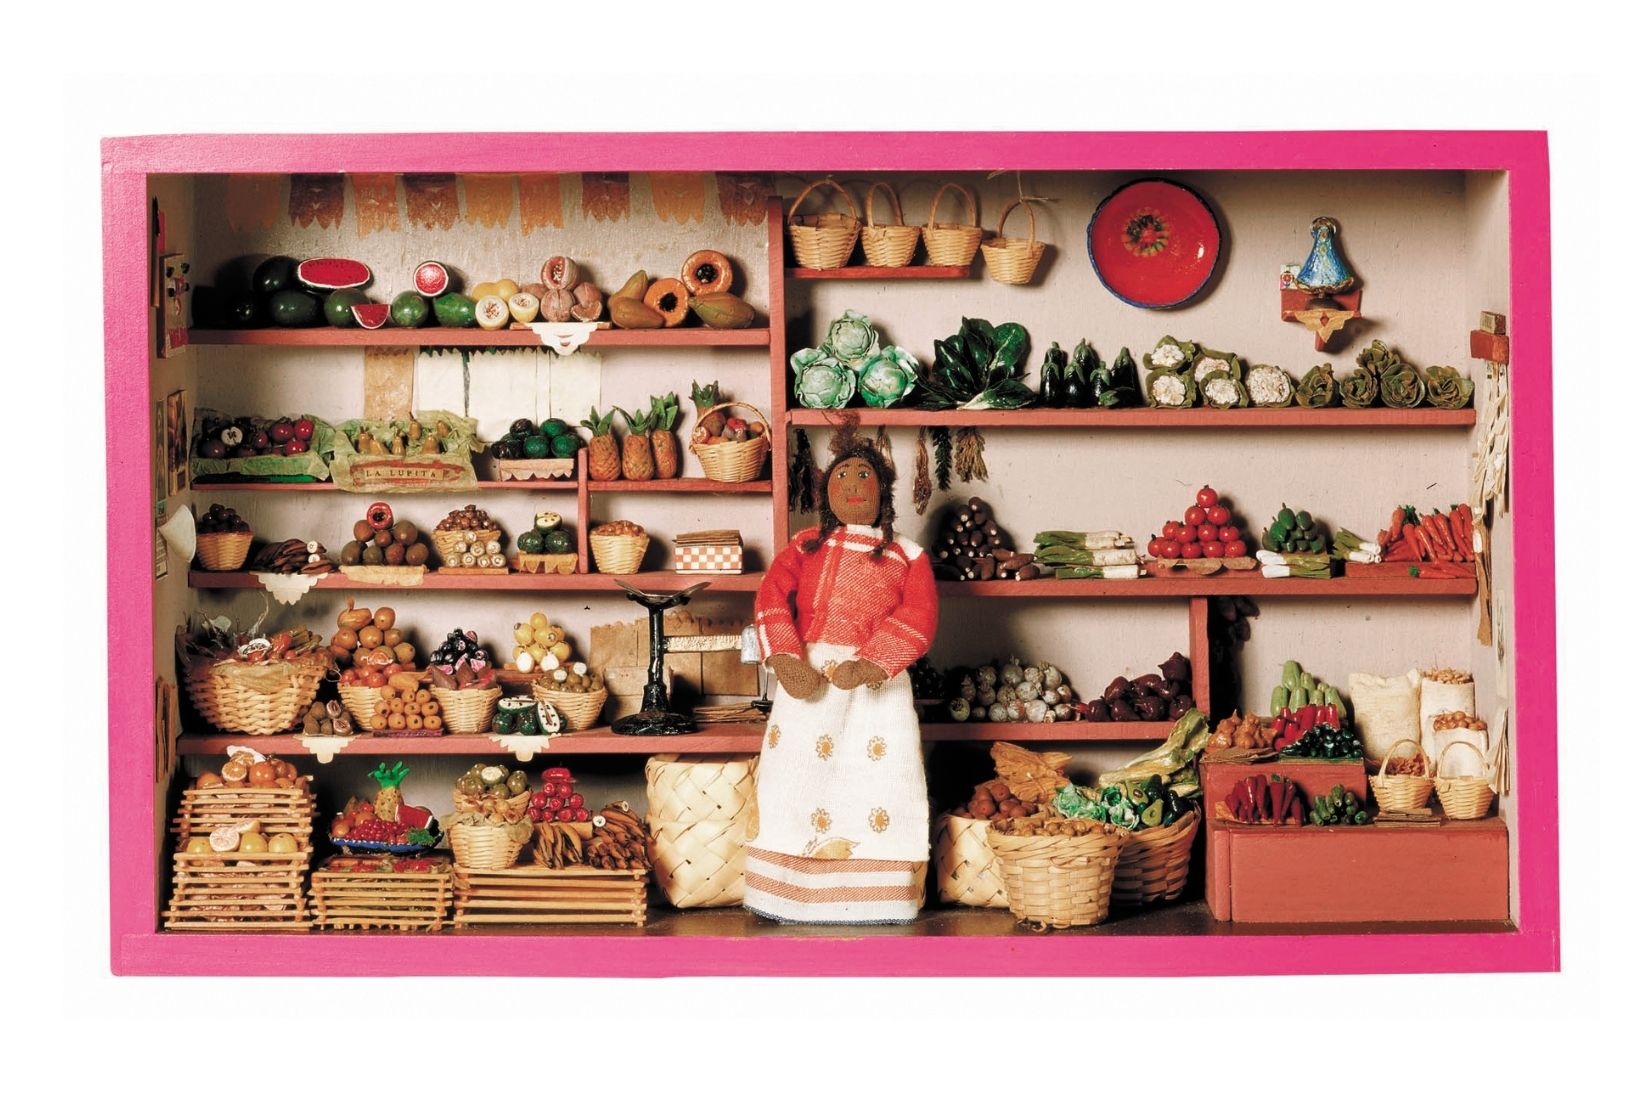 Tienda de frutas y verduras, de madera y cartón. Artesana Guadalupe Rocha. Jocotitlán, EdoMex. 1990. Col. Part. (Foto: Nicola Lorusso).